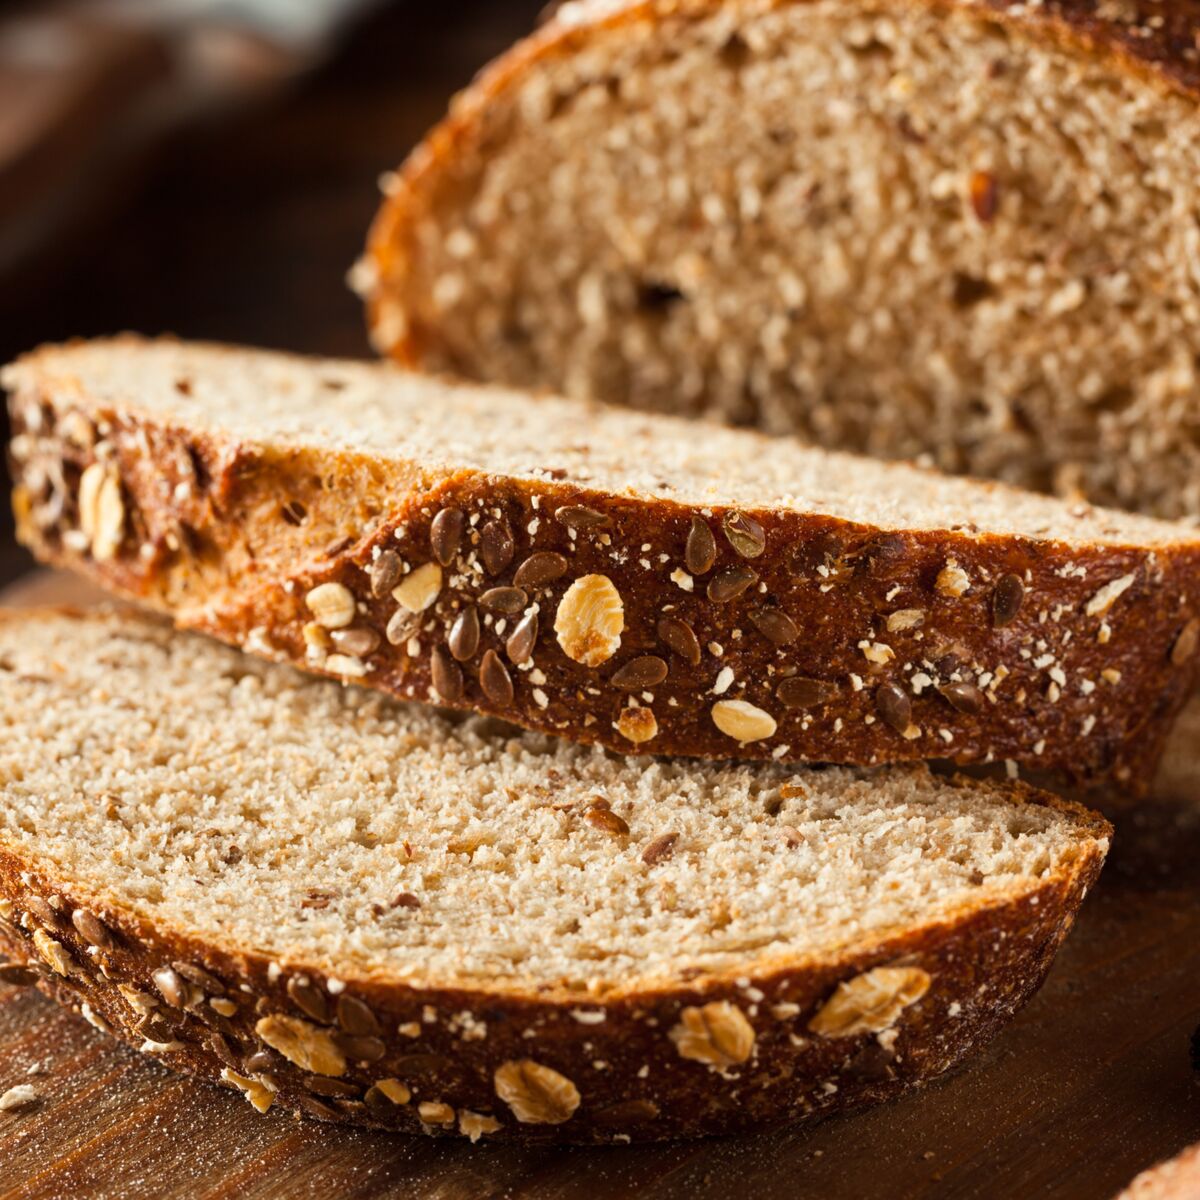 Pain complet et ses bienfaits : pourquoi est-il meilleur pour la santé que  le pain blanc ? - Cuisine Actuelle